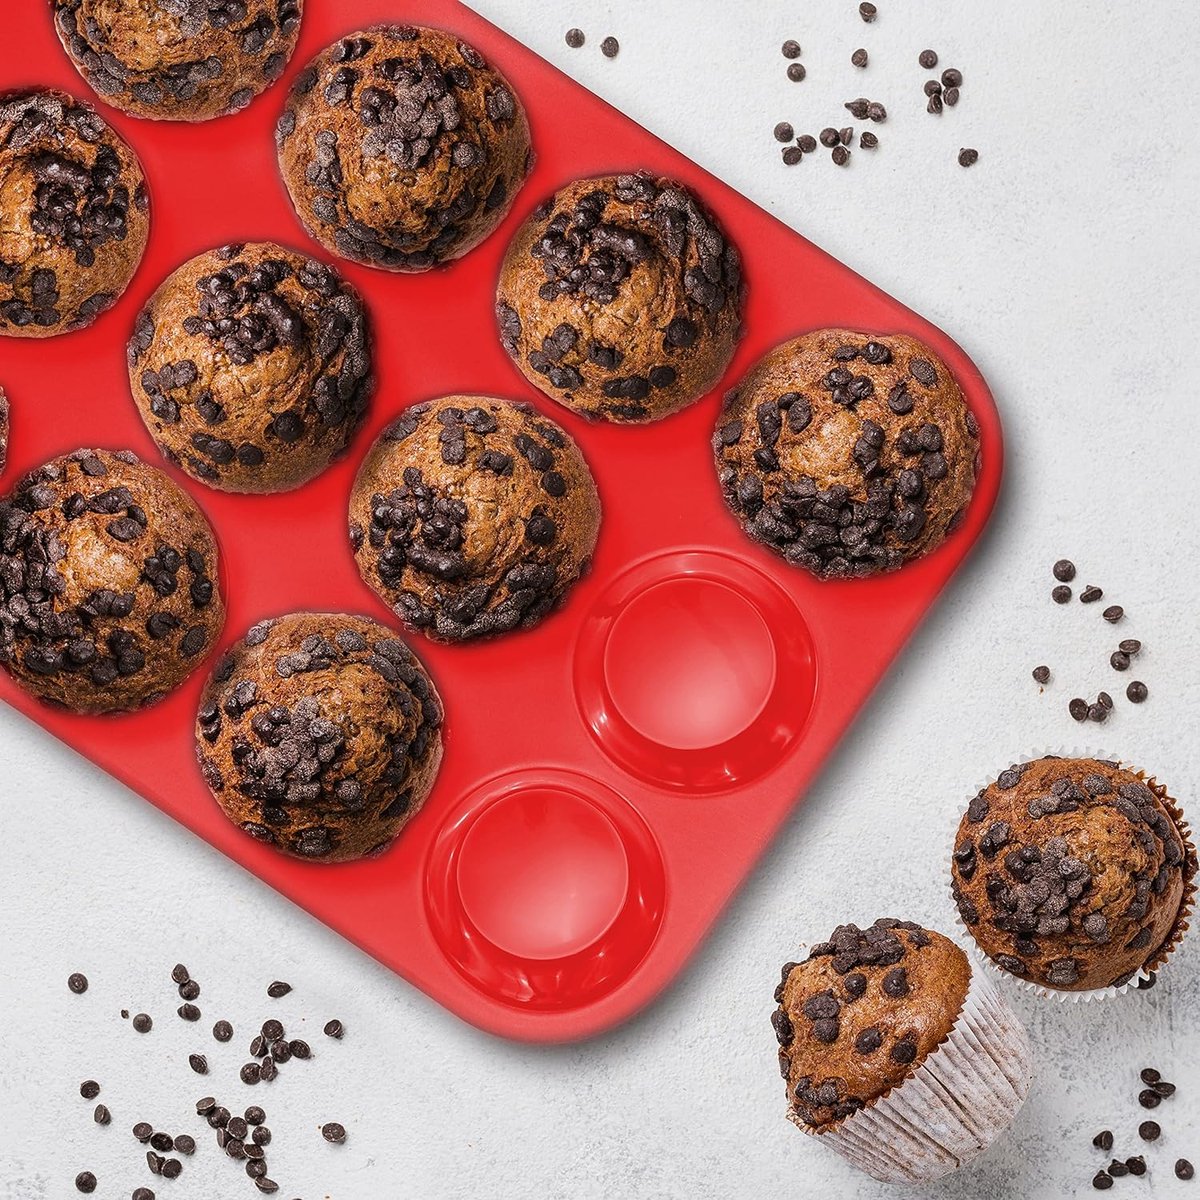 DiverseGoods Siliconen Muffin Bakvorm - 12 Cupcake Vormpjes - Hittebestendig en Gemakkelijk Schoon te Maken - Perfect voor Heerlijke Gebakjes